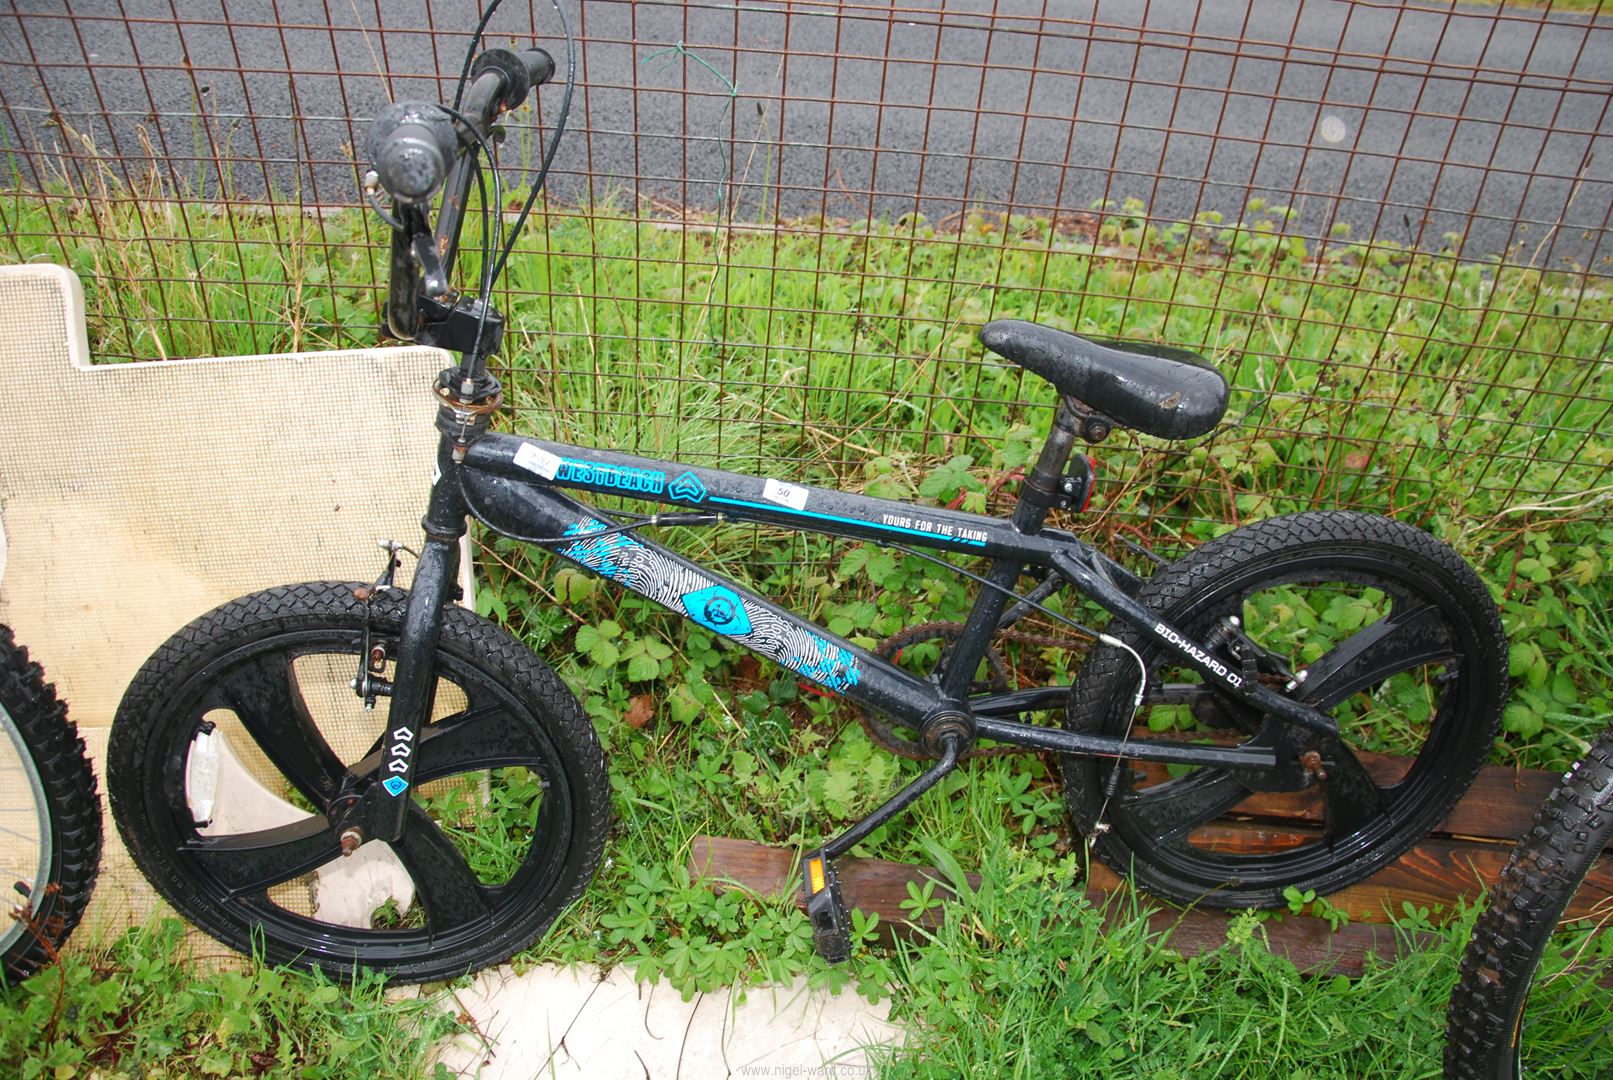 A child's stunt bike.